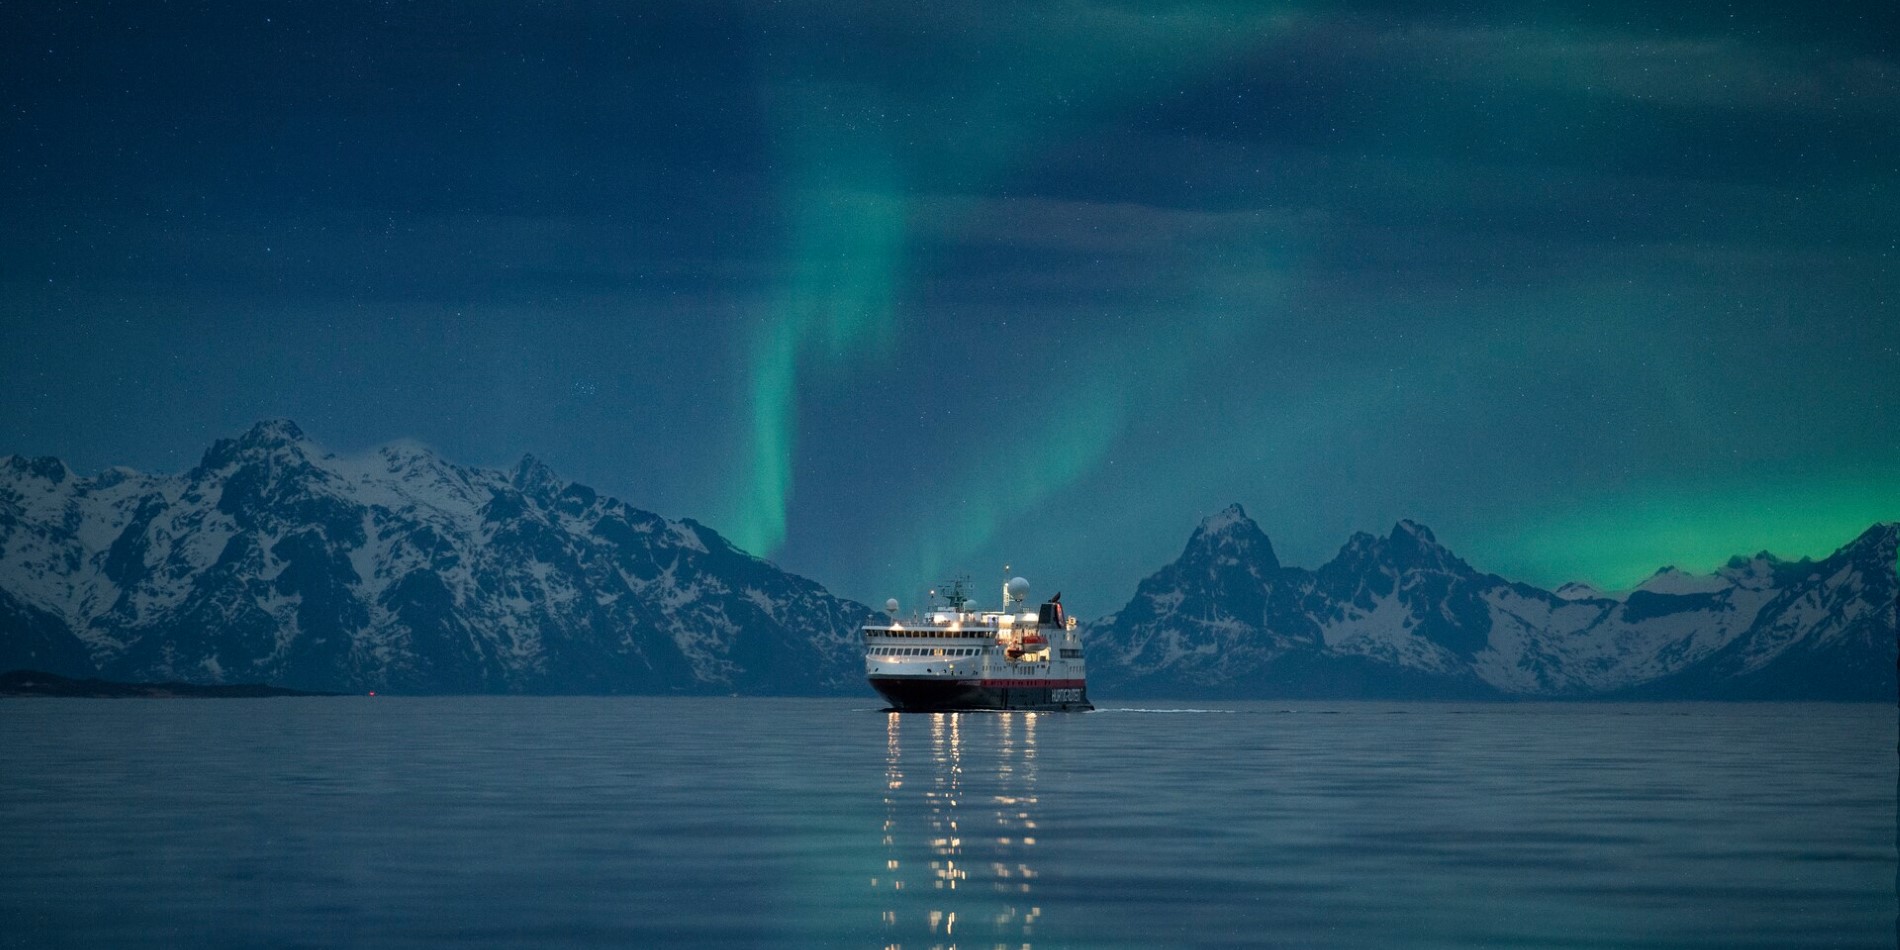 Hurtigrutens skib, der sejler i Norge med nordlyset over sig